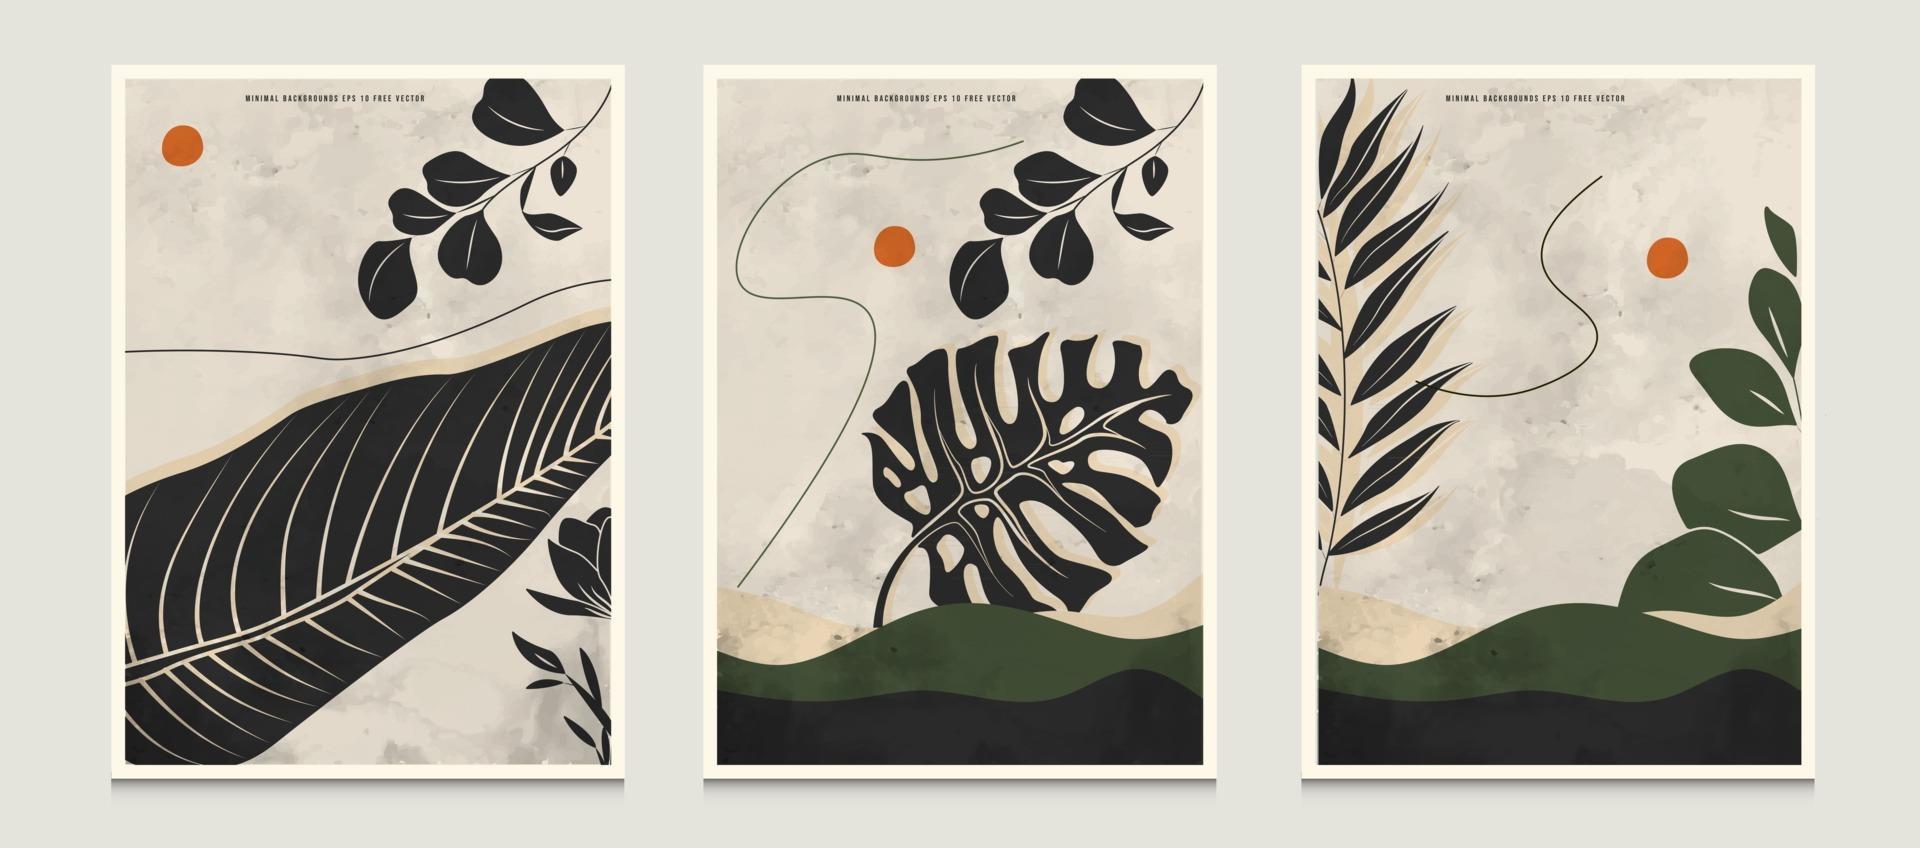 fundos de ilustração vetorial de arte de linha botânica abstrata minimalista moderna definida com cena de arte de linha botânica adequada para livros, capas, brochuras, folhetos, publicações, cartazes, etc. vetor